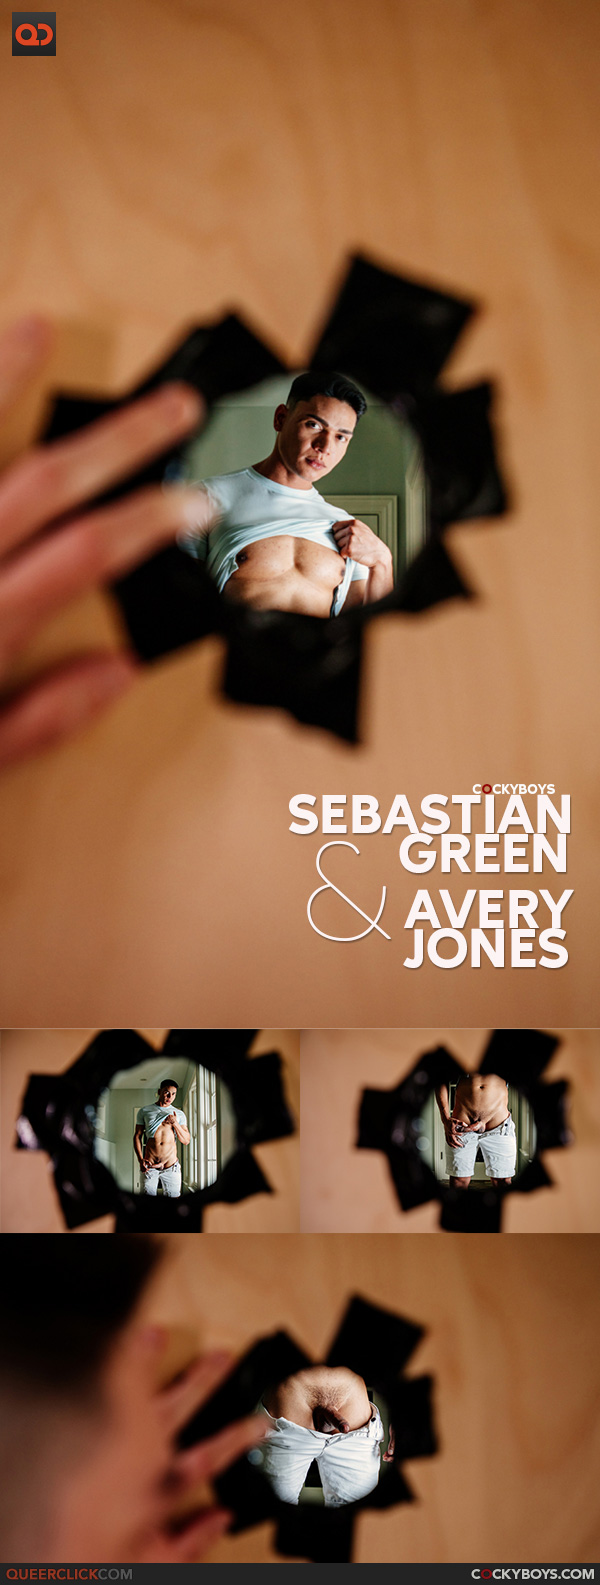 CockyBoys: Avery Jones and Sebastian Green